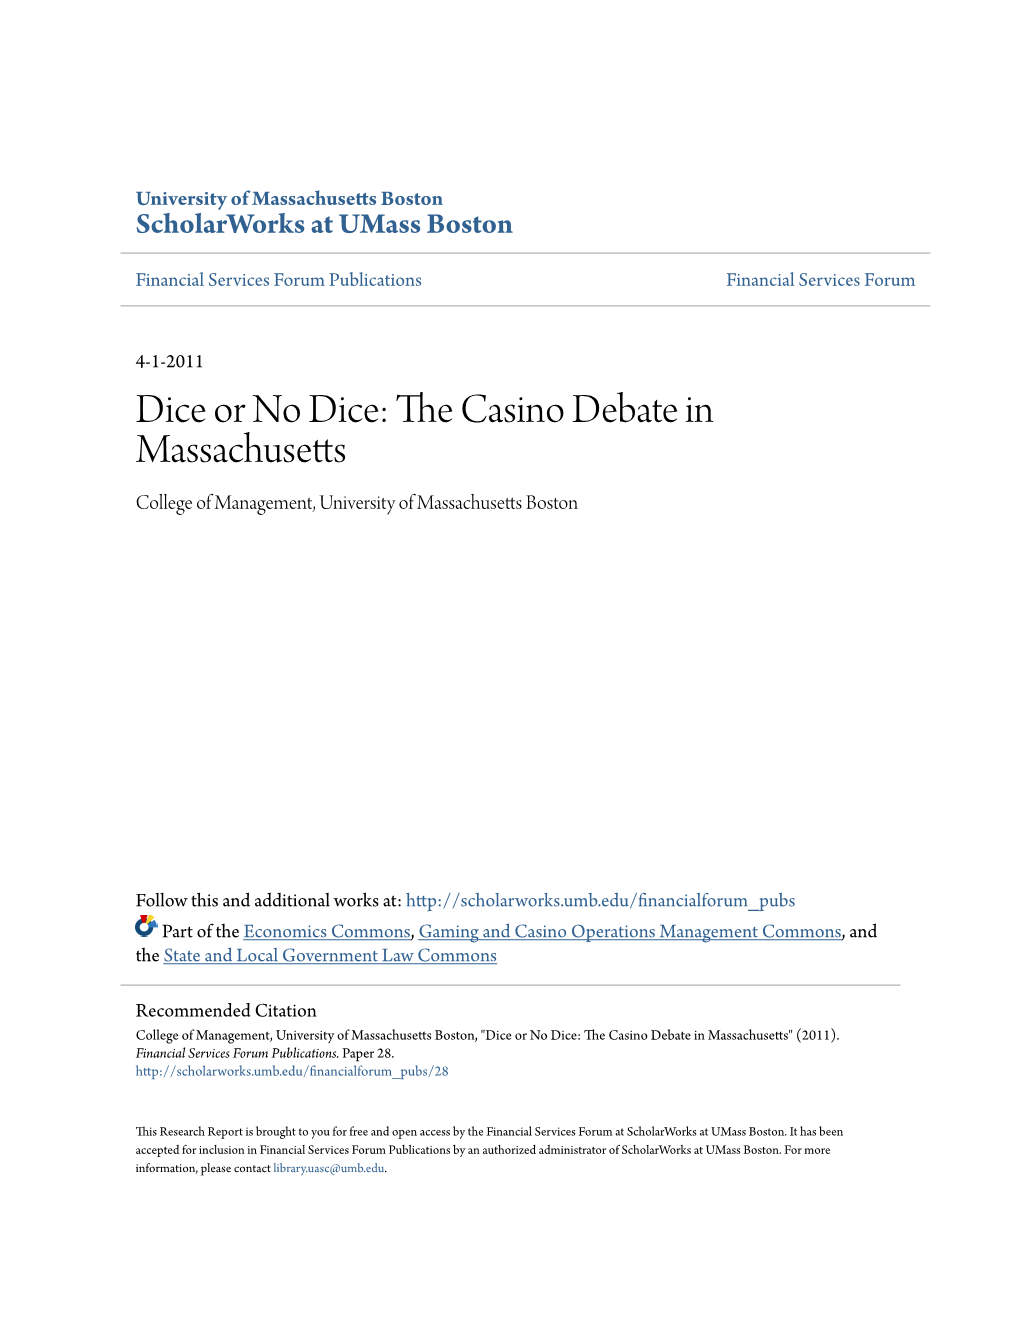 The Casino Debate in Massachusetts